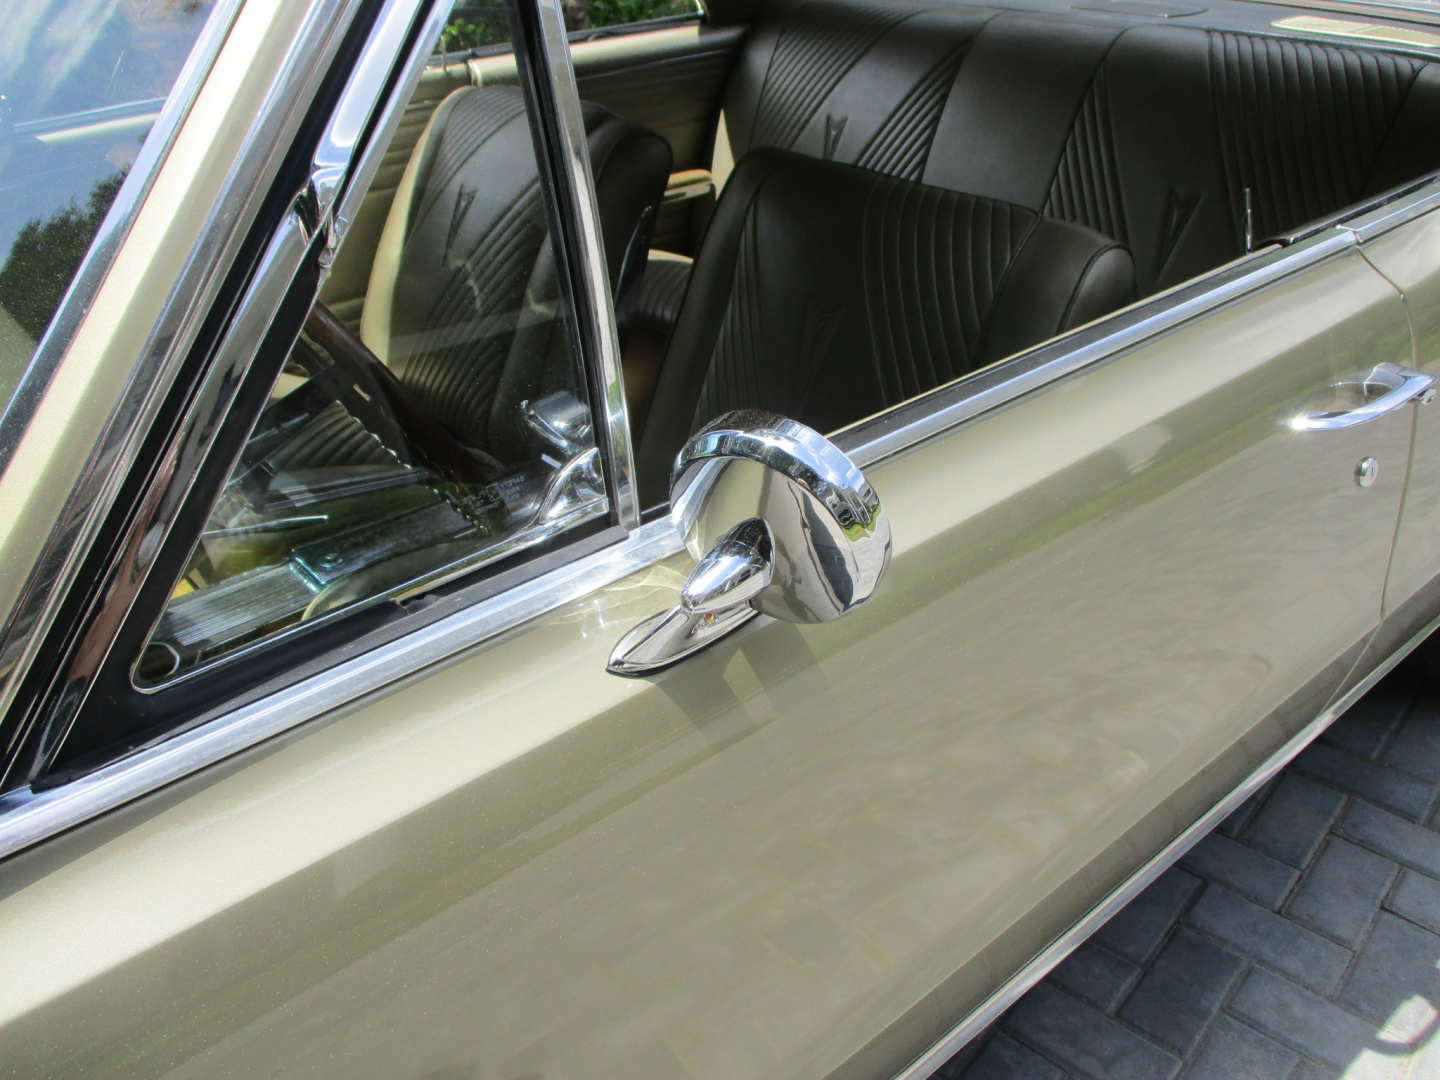 7th Image of a 1965 PONTIAC GTO